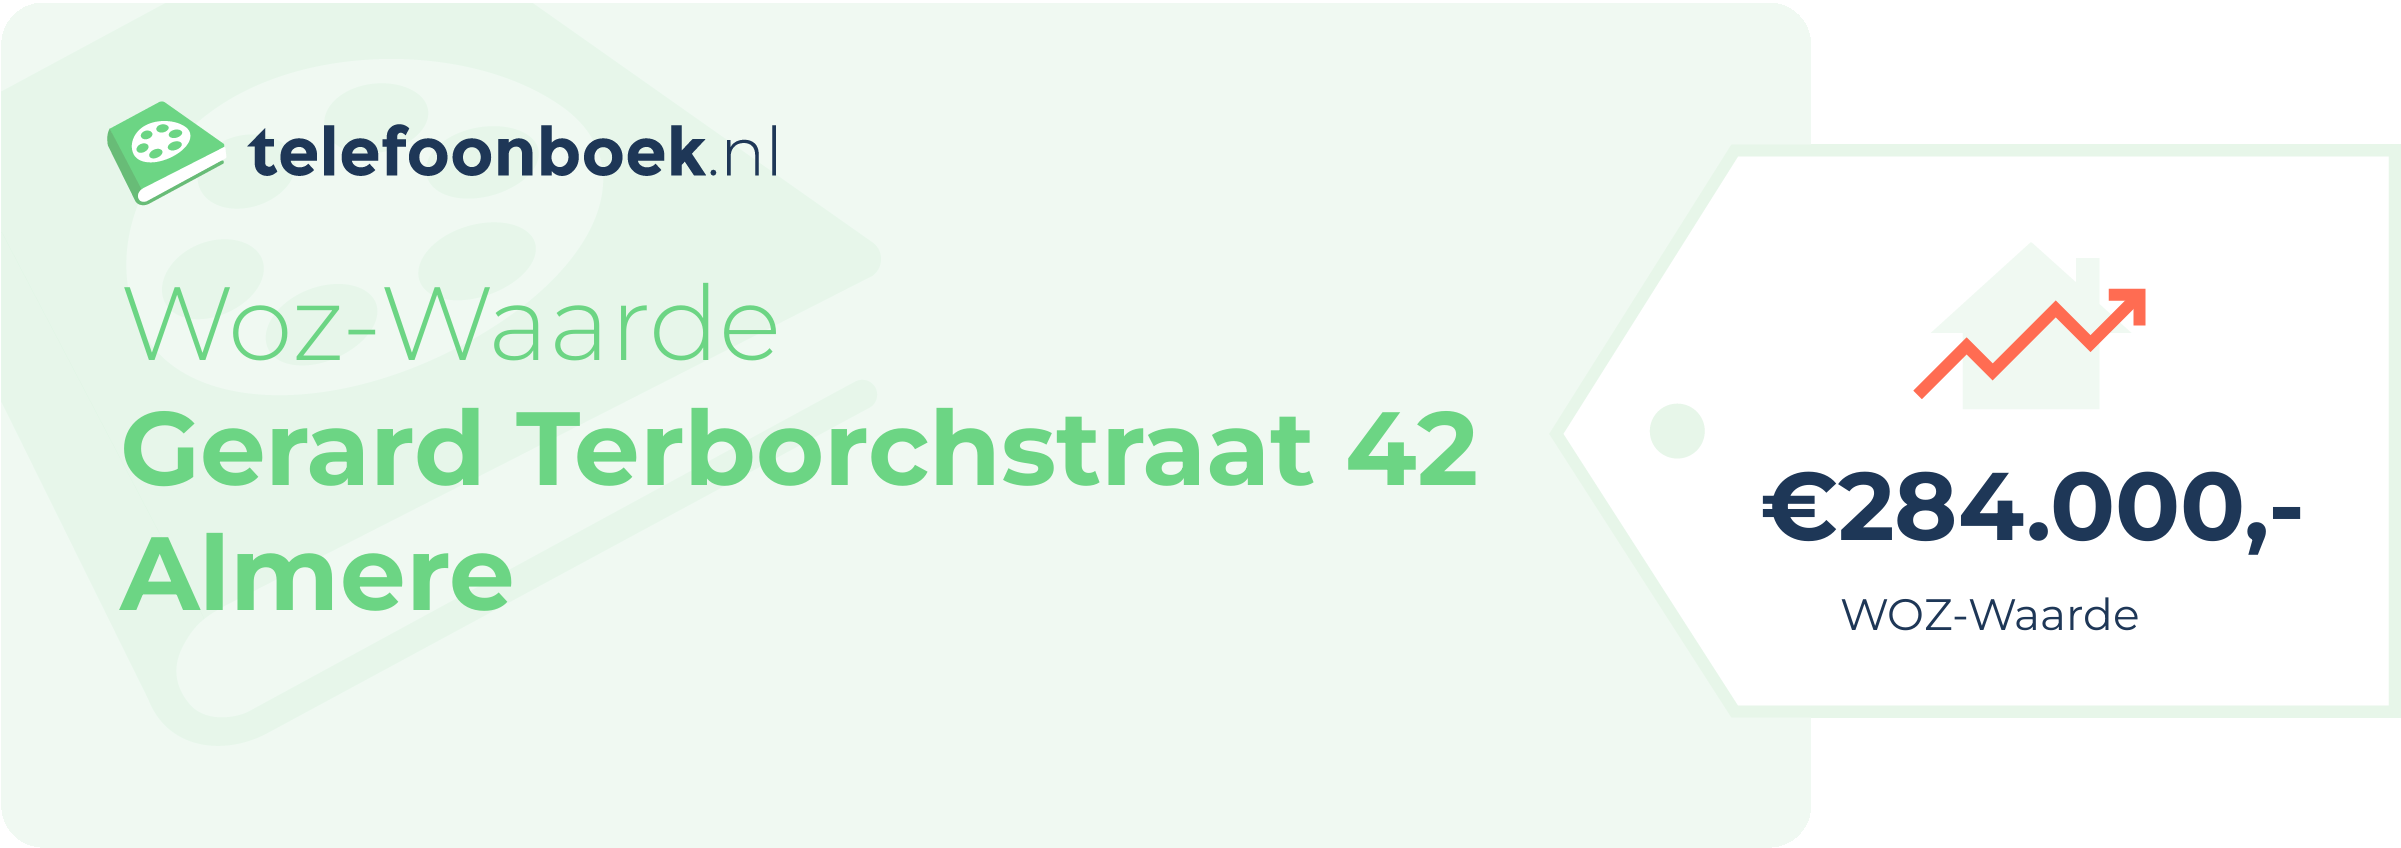 WOZ-waarde Gerard Terborchstraat 42 Almere